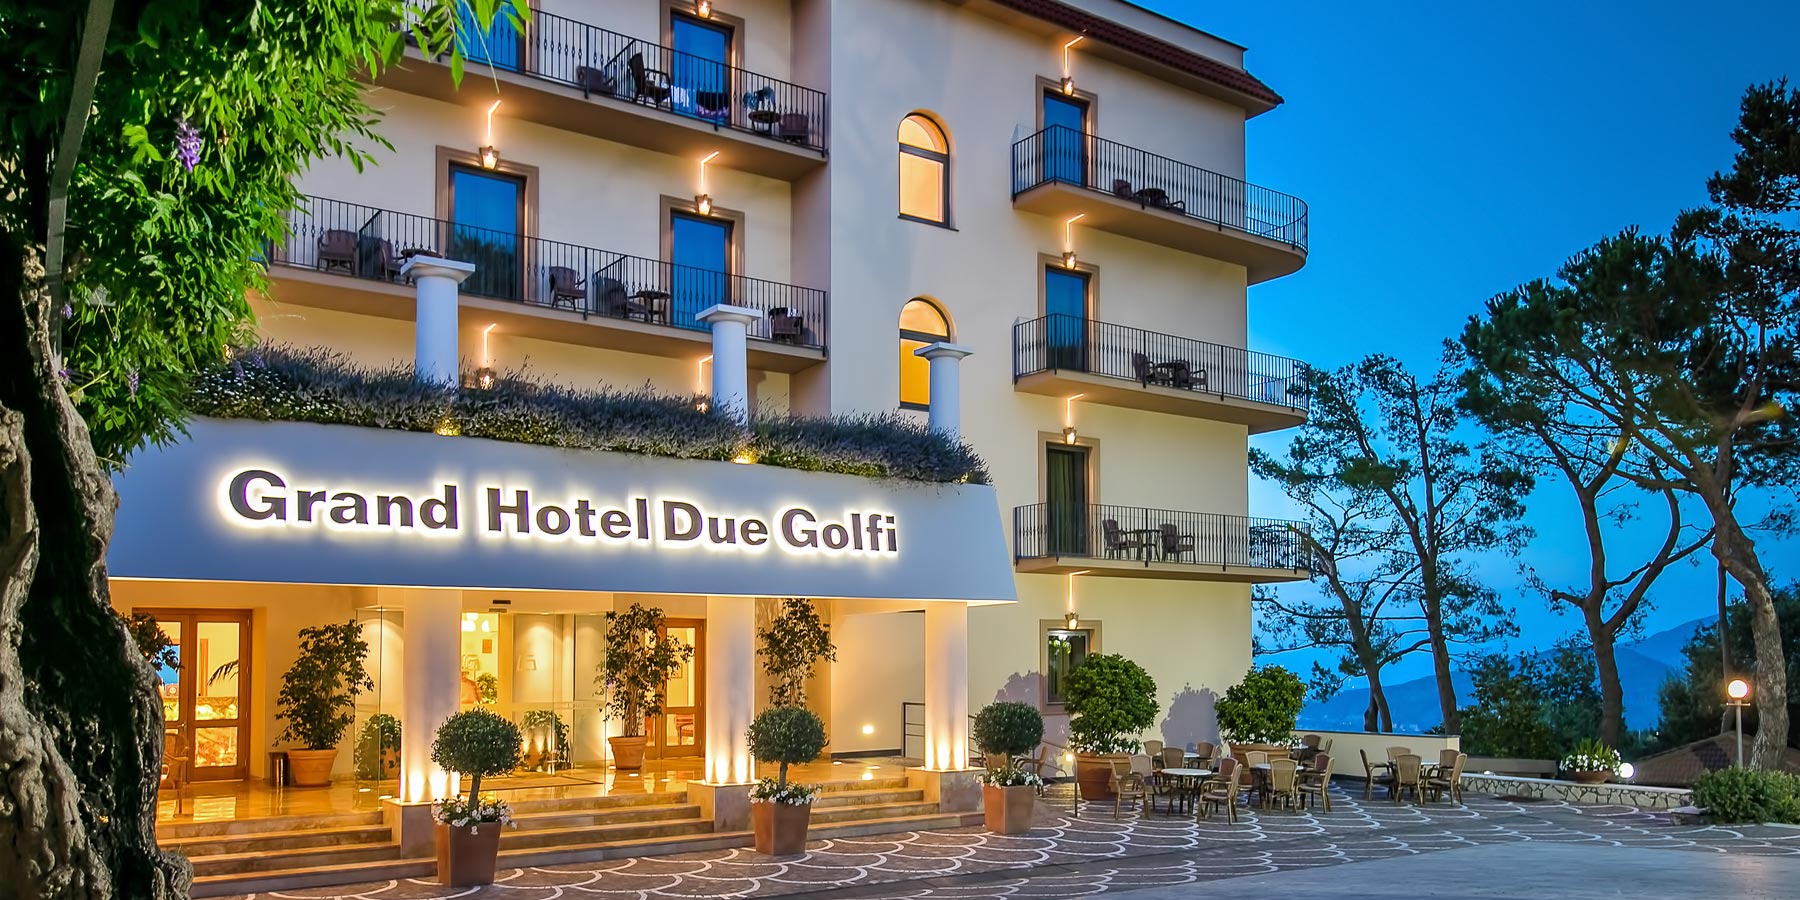 The Grand Hotel Due Golfi, Sorrento